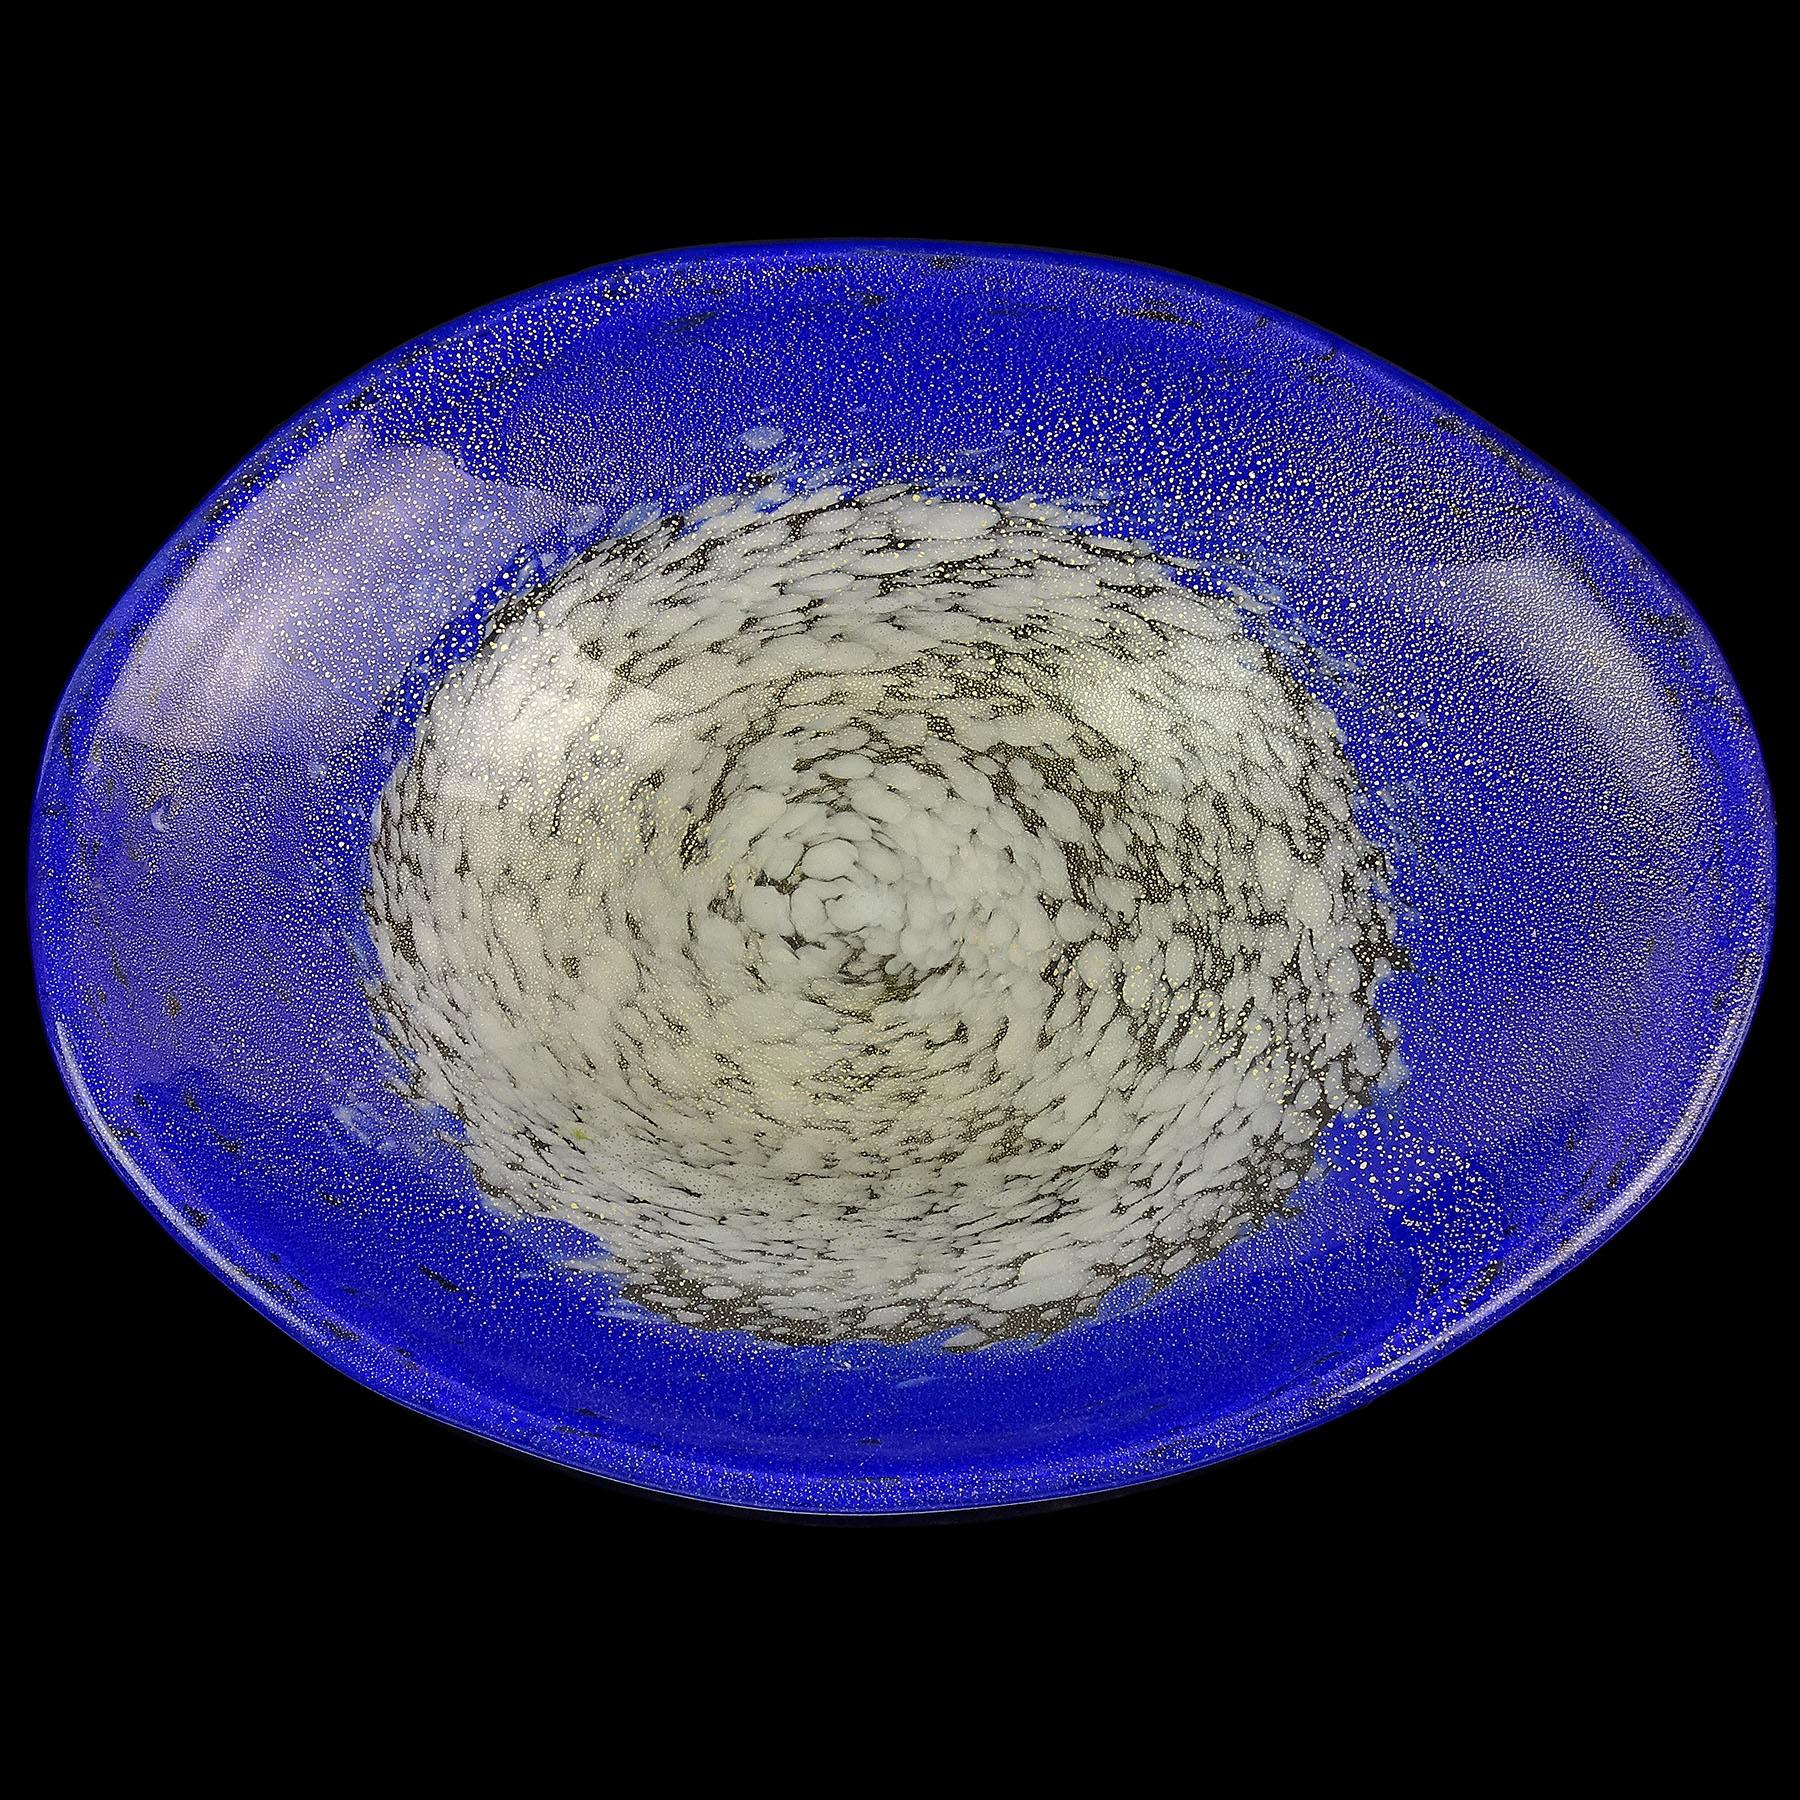 Magnifique bol décoratif en verre d'art italien de Murano, soufflé à la main, blanc avec bord bleu saphir et mouchetures d'or. Attribué à la société Fratelli Toso. La pièce a une forme ovale, et les couleurs sont réalisées avec des milliers